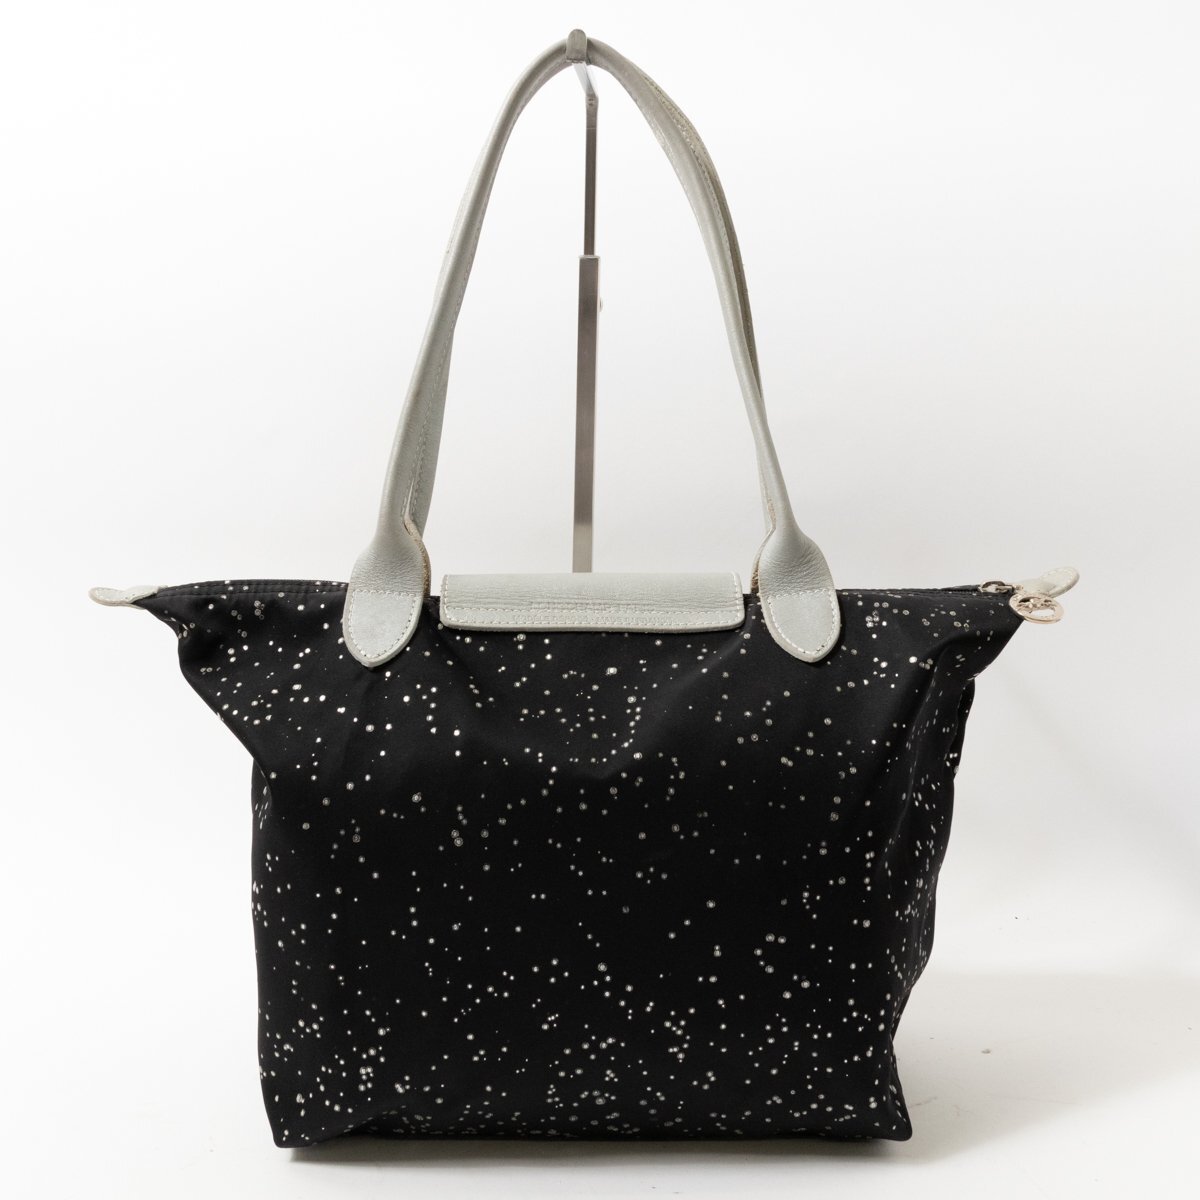 LONGCHAMP Long Champ handbag tote bag bag black black polka dot pattern dot pattern nylon casual stylish lady's woman woman 